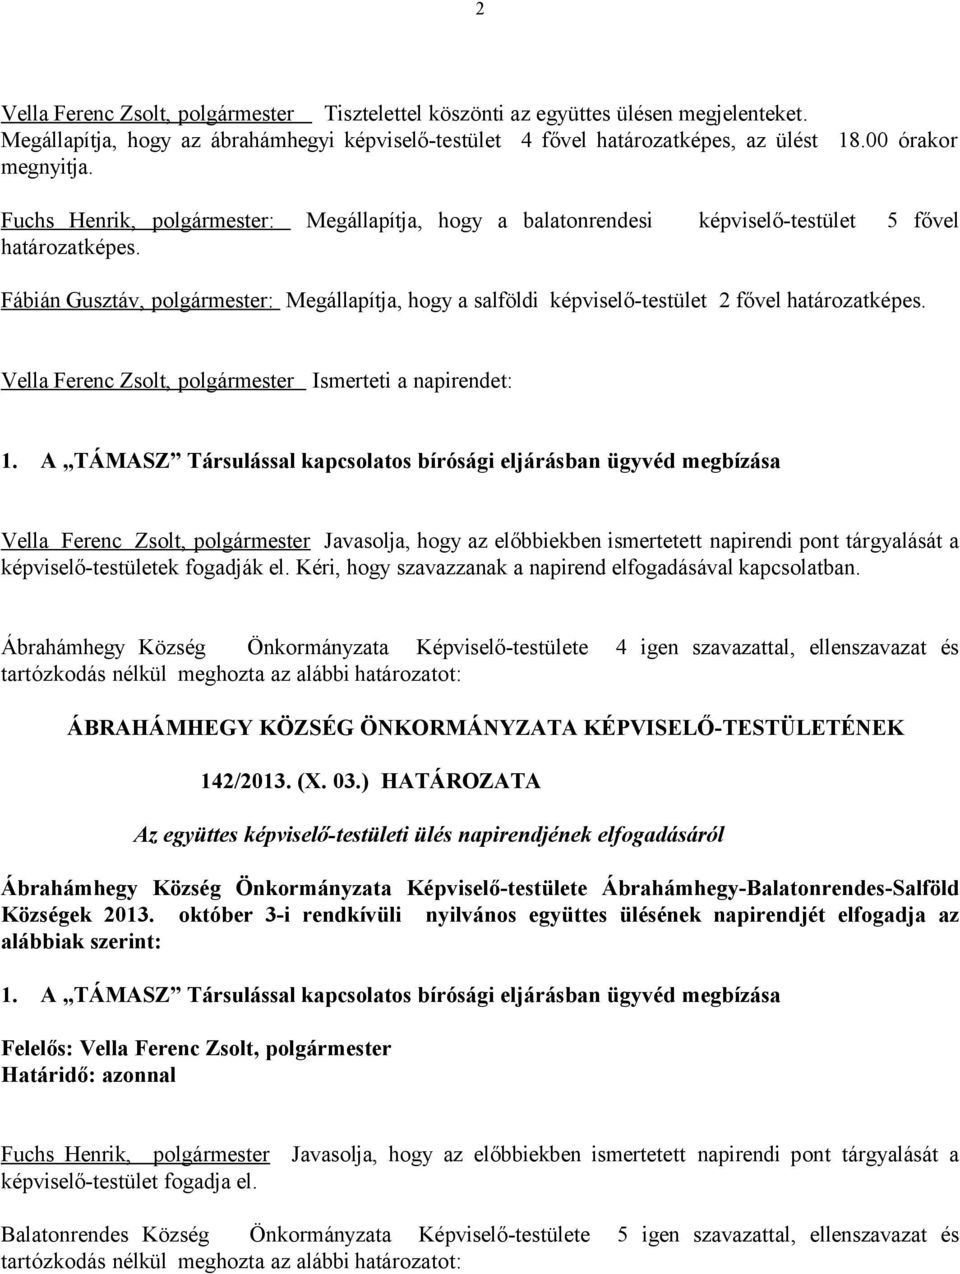 Fábián Gusztáv, polgármester: Megállapítja, hogy a salföldi képviselő-testület 2 fővel határozatképes.